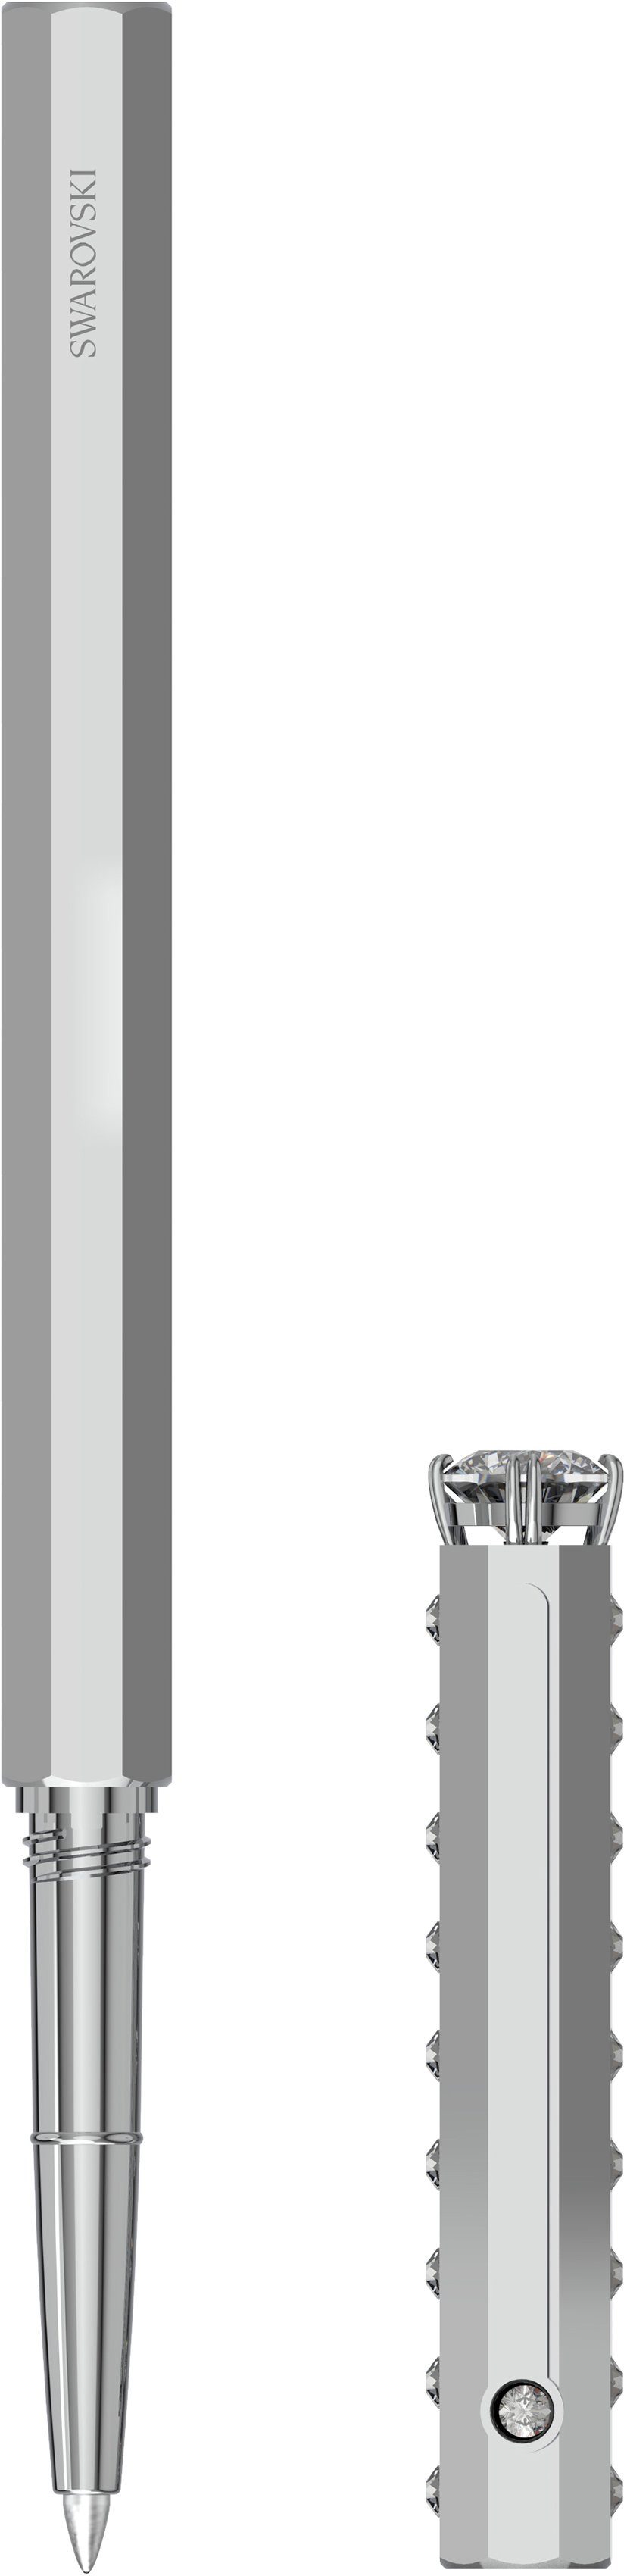 Swarovski Kugelschreiber Kristallen 5631209, 5634417, mit Klassisch, 5627168, metallfarben-kristallweiß 5631210, Swarovski®